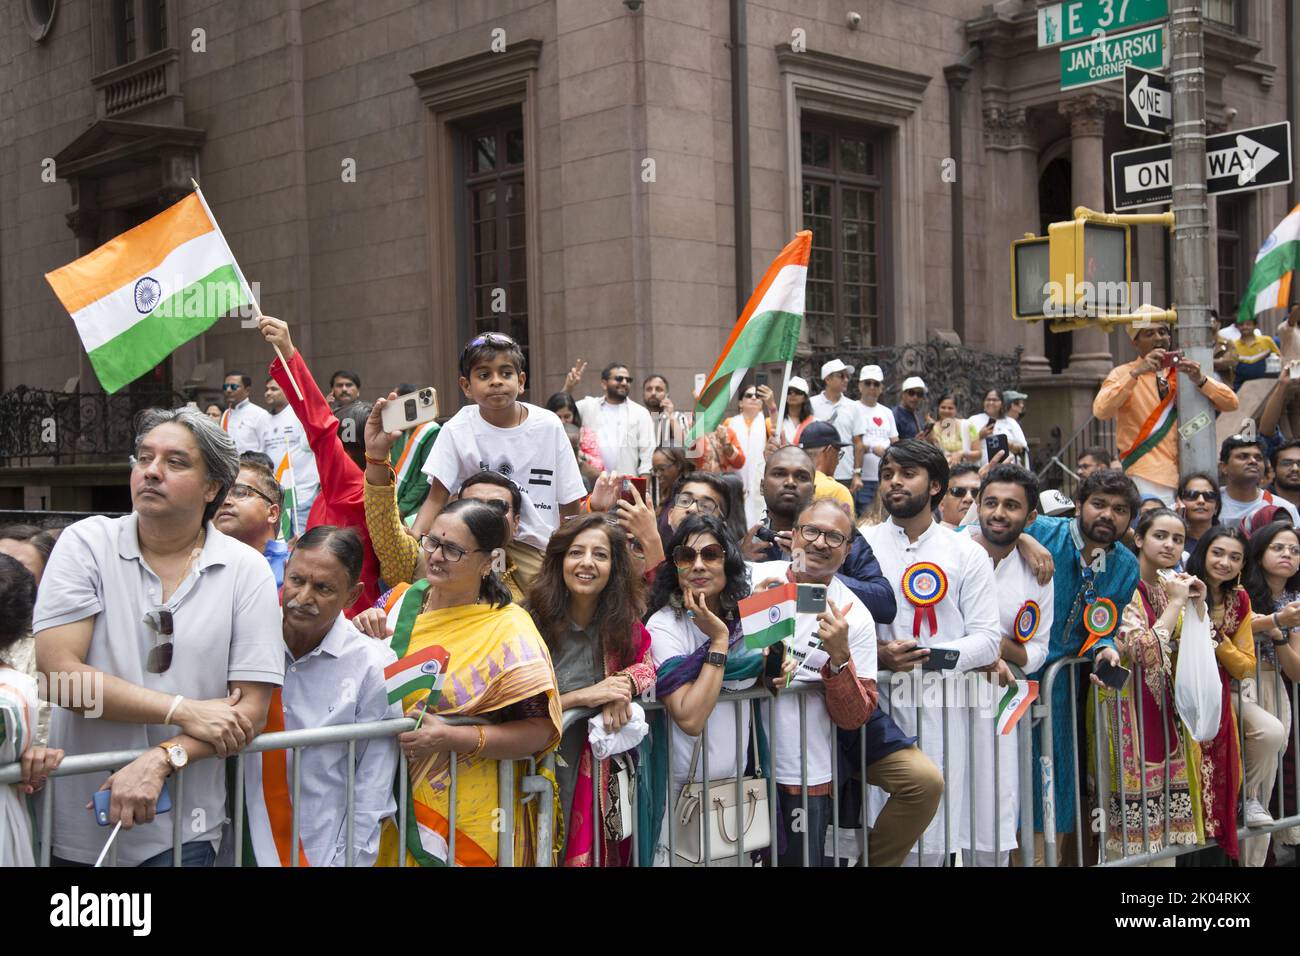 75th aniversario Desfile del Día de la Independencia de la India en Madison Avenue en la ciudad de Nueva York. Multitudes de orgullosos espectadores indios aclaman el desfile en la ciudad de Nueva York. Foto de stock